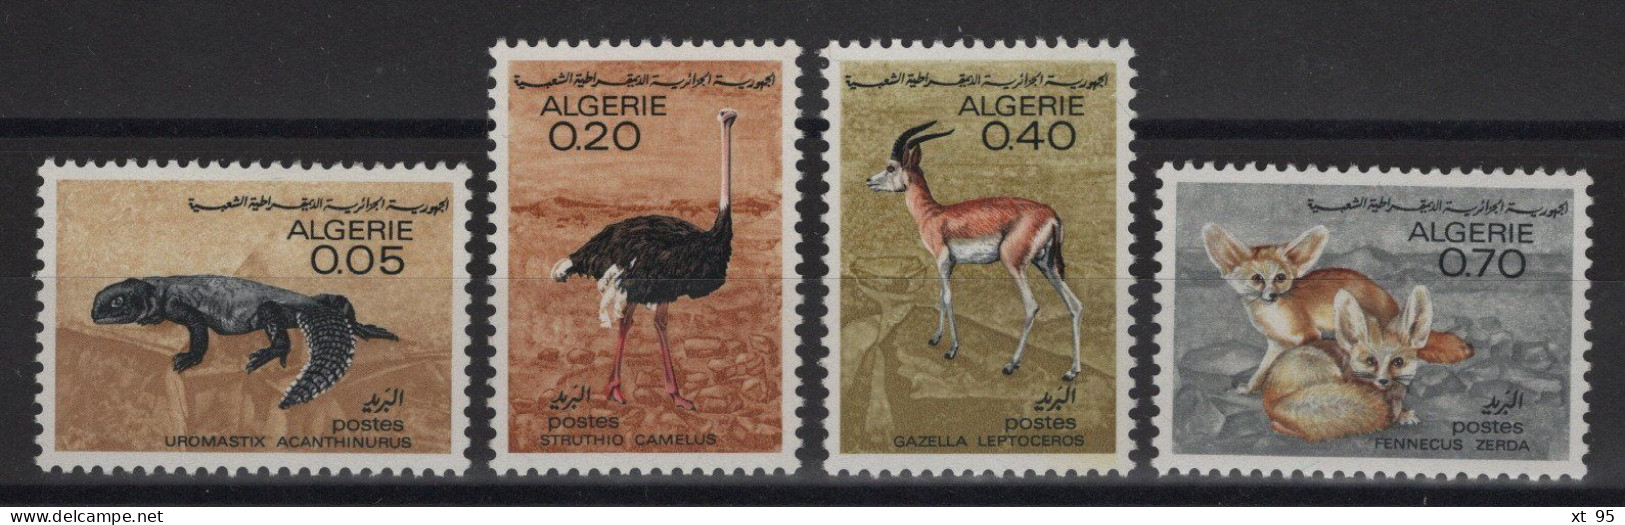 Algerie - N°447 à 450 - Faune Saharienne - Cote 5.50€ - ** Neufs Sans Charniere - Algérie (1962-...)